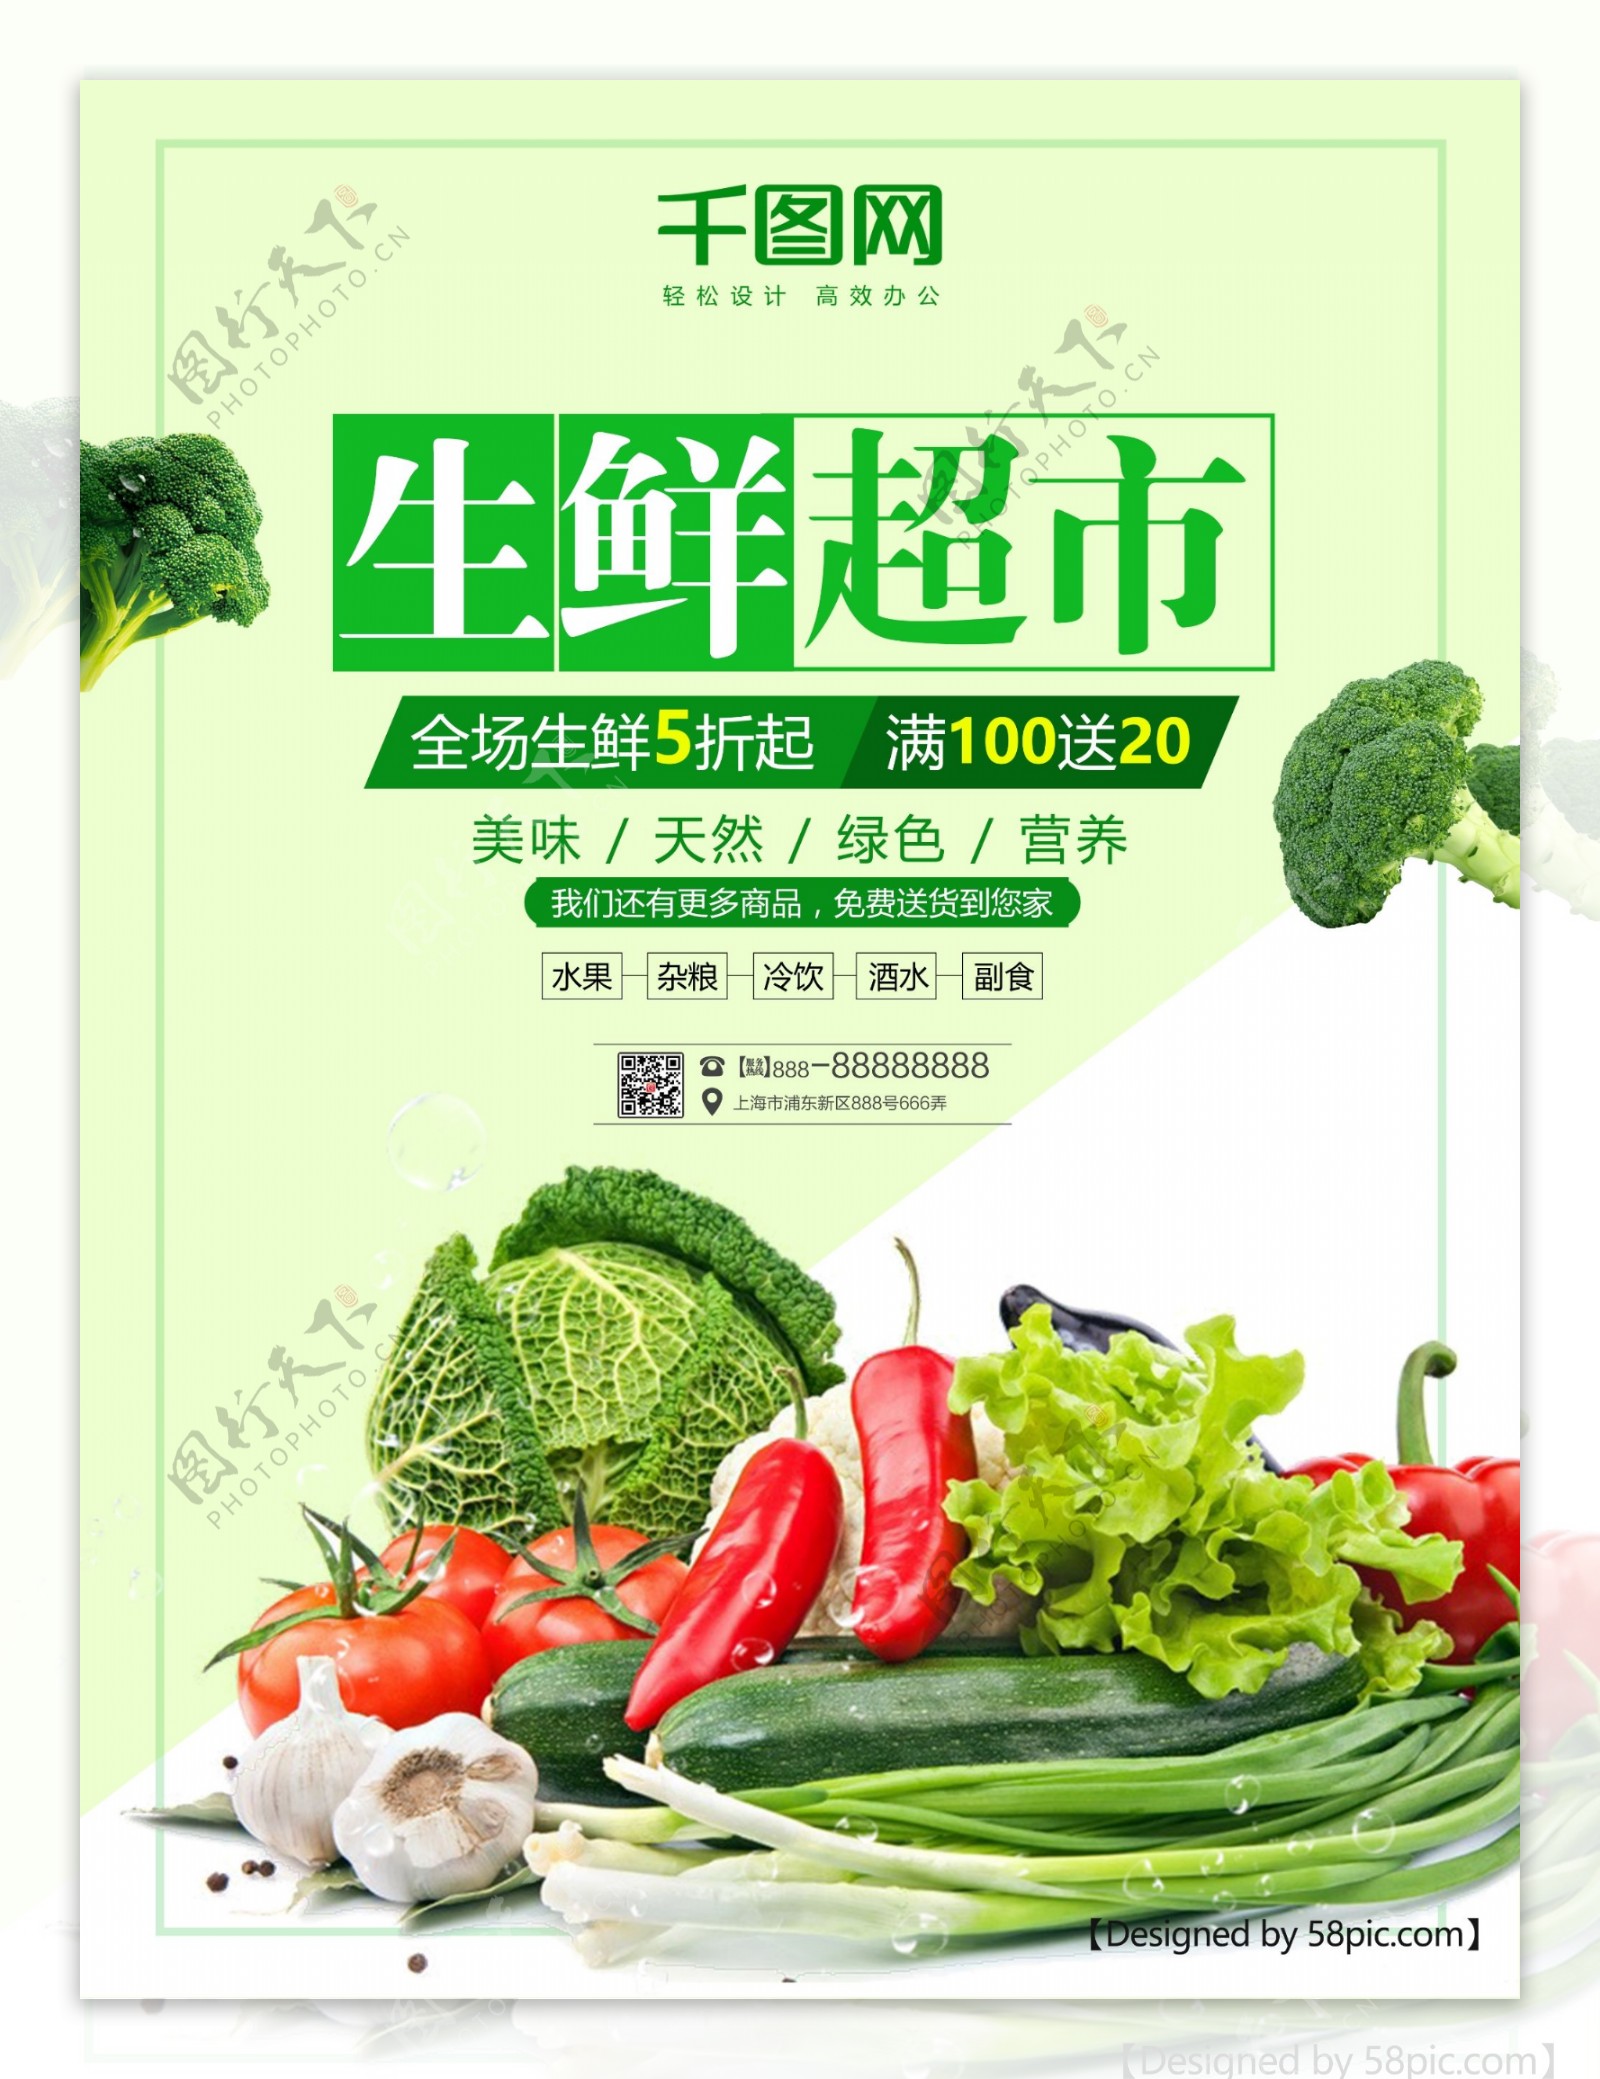 绿色生鲜超市宣传海报